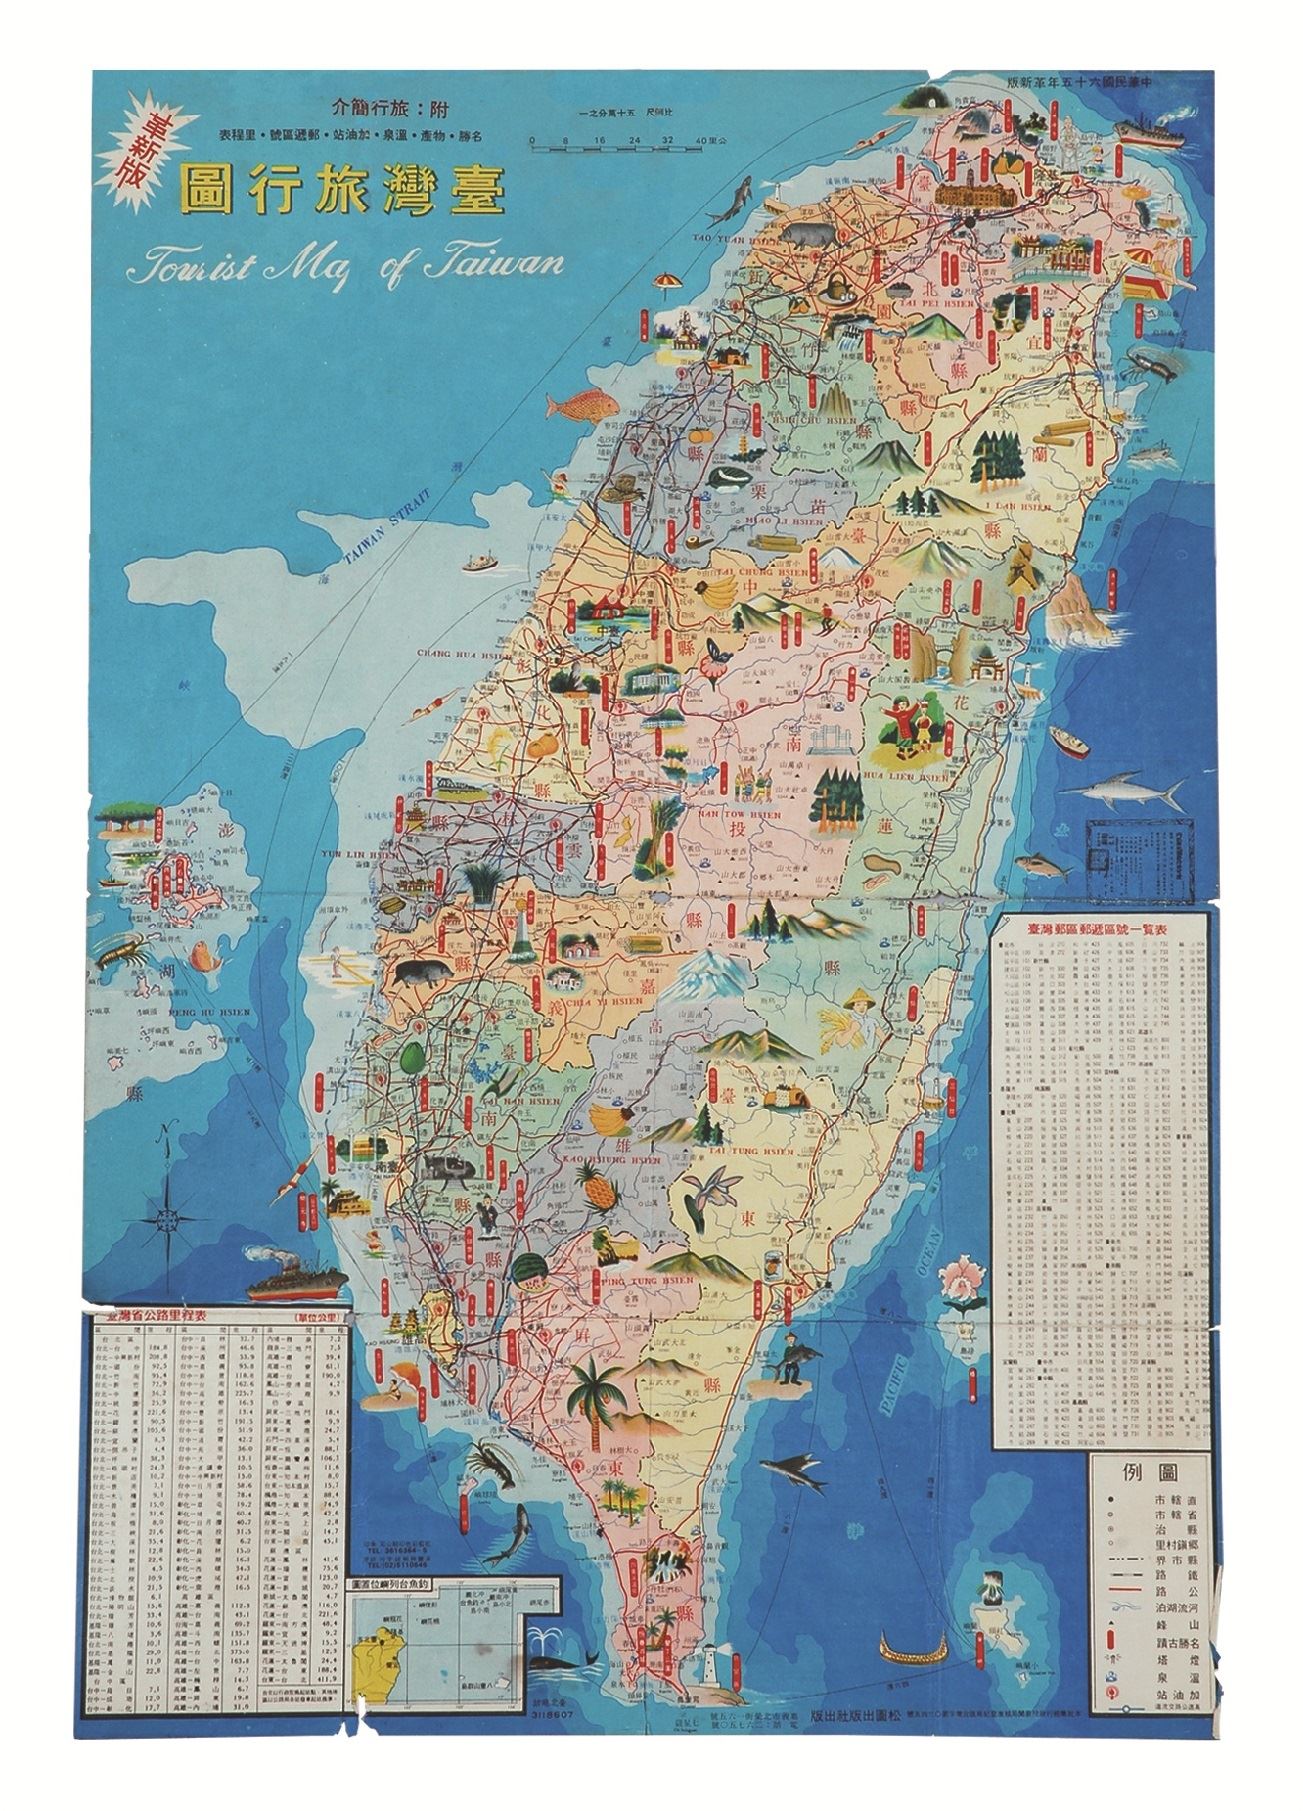 地圖明信片4(1976年)-臺灣旅行地圖